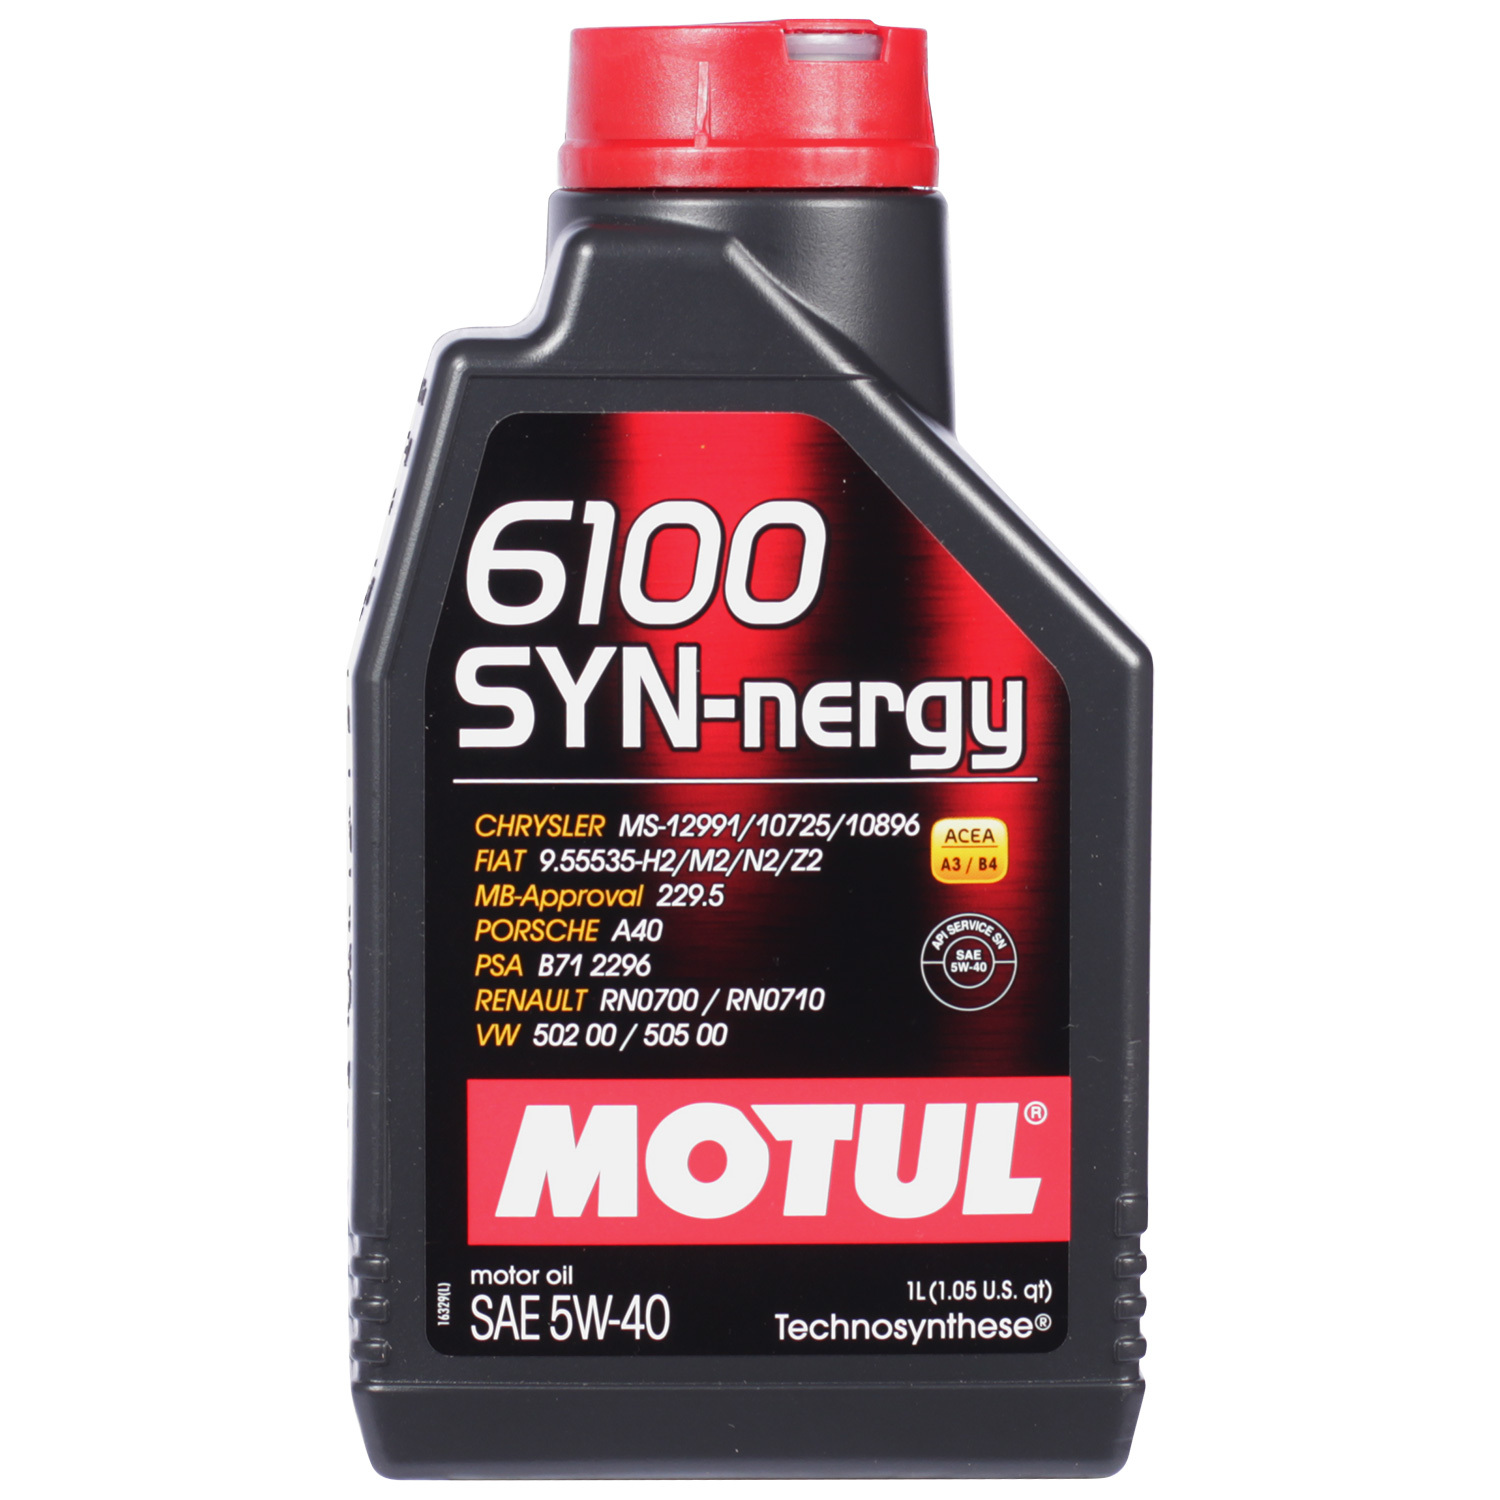 Motul Моторное масло Motul 6100 SYN-NERGY 5W-40, 1 л motul моторное масло motul 8100 eco nergy 5w 30 4 л